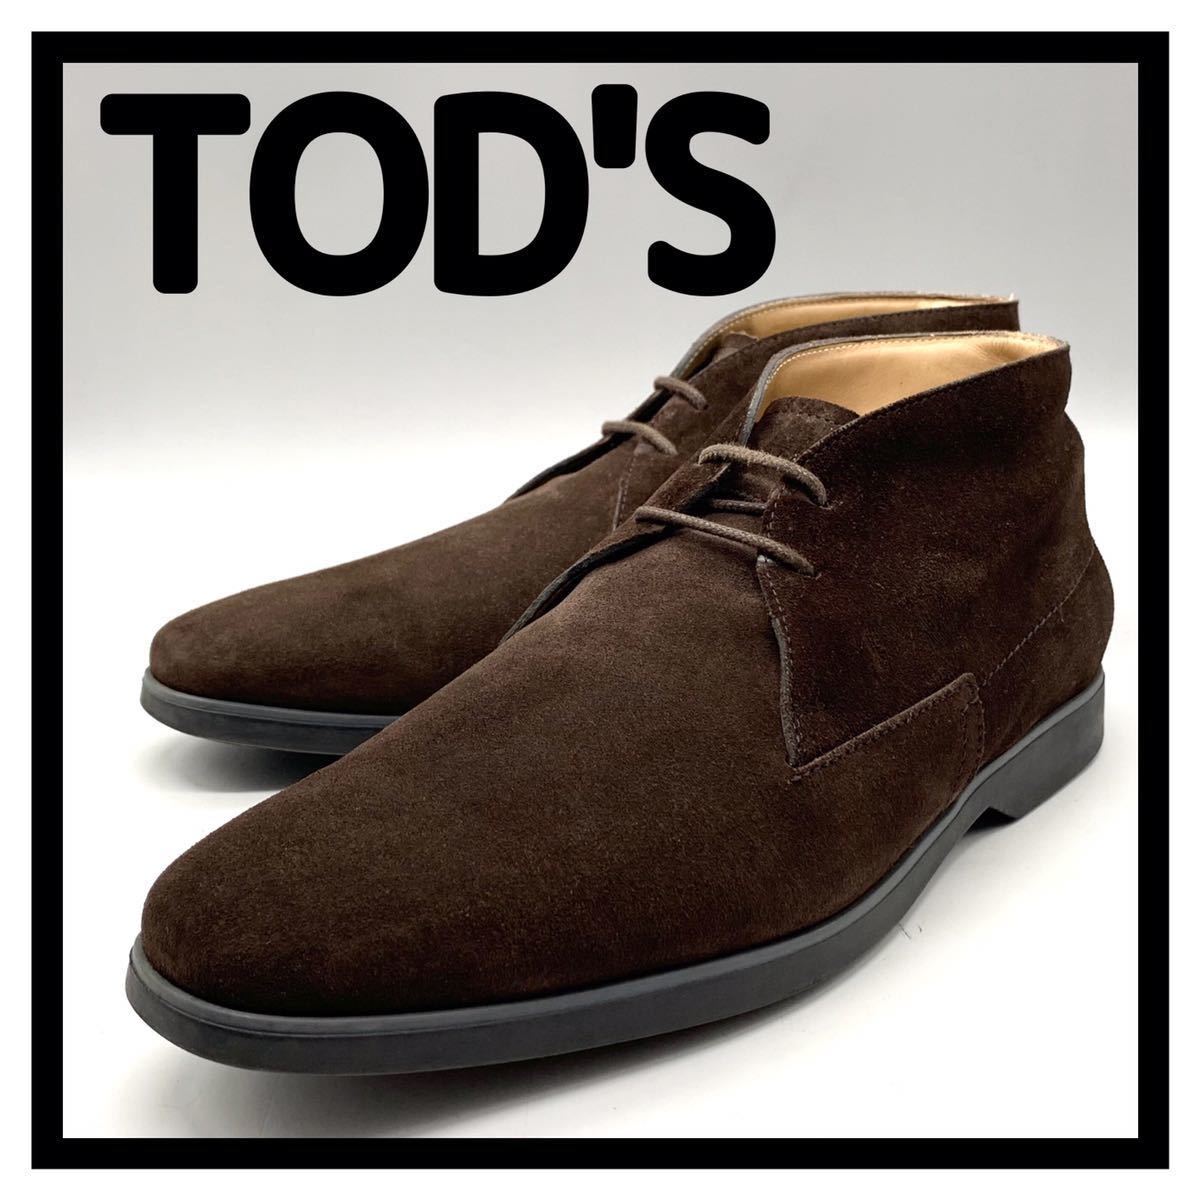 TOD'S (トッズ) ドレスシューズ チャッカブーツ ショートブーツ スエード ブラウン UK7.5 26.5cm 革靴 シューズ ビジネス イタリア製